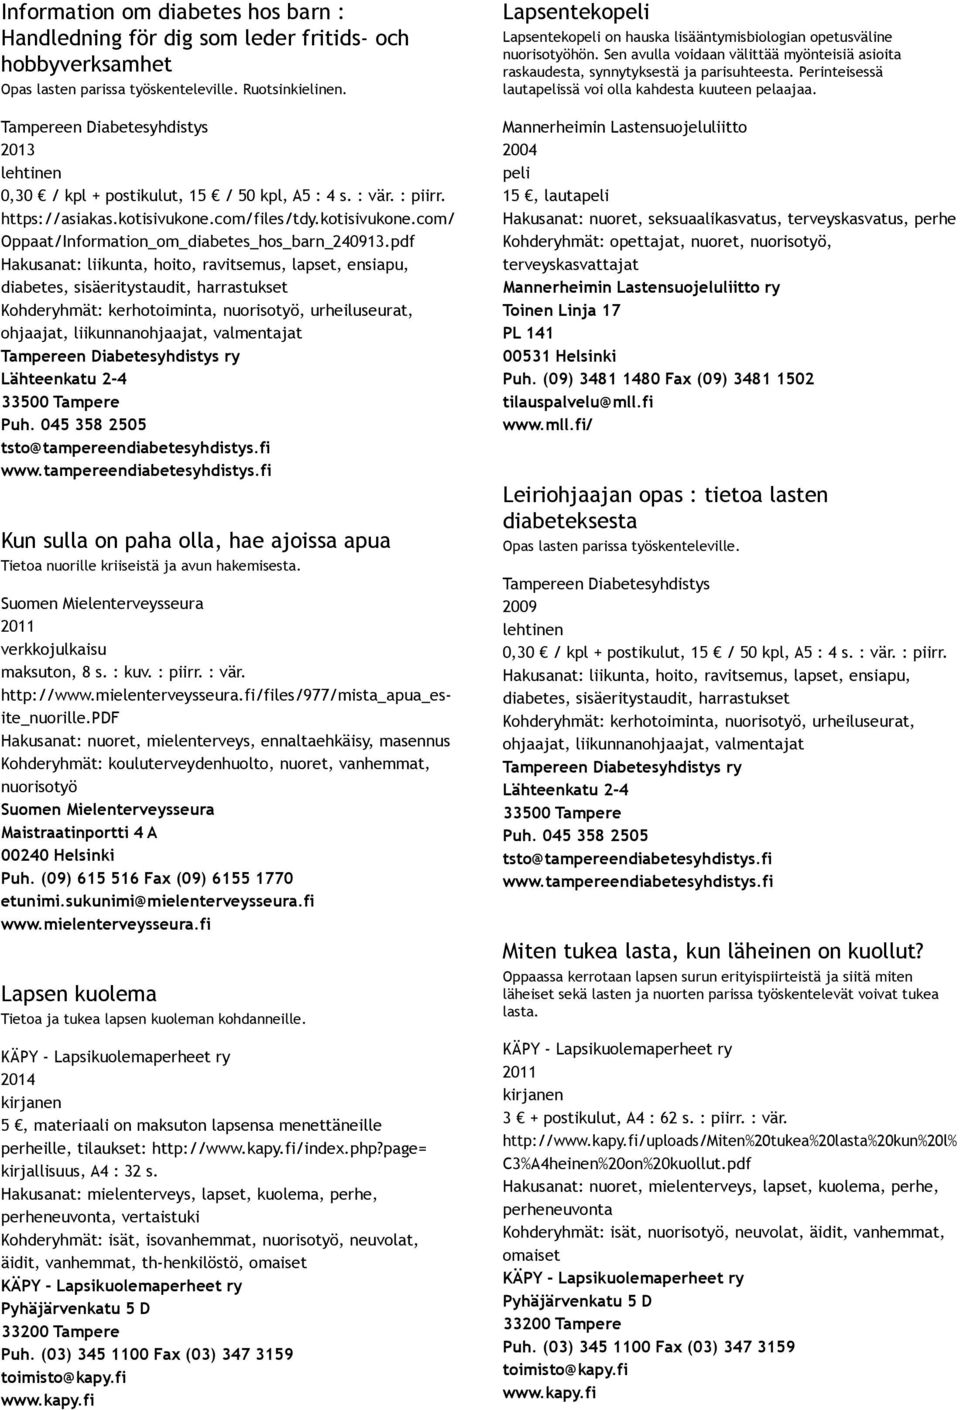 pdf Hakusanat: liikunta, hoito, ravitsemus, lapset, ensiapu, diabetes, sisäeritystaudit, harrastukset Kohderyhmät: kerhotoiminta,, urheiluseurat, ohjaajat, liikunnanohjaajat, valmentajat Tampereen